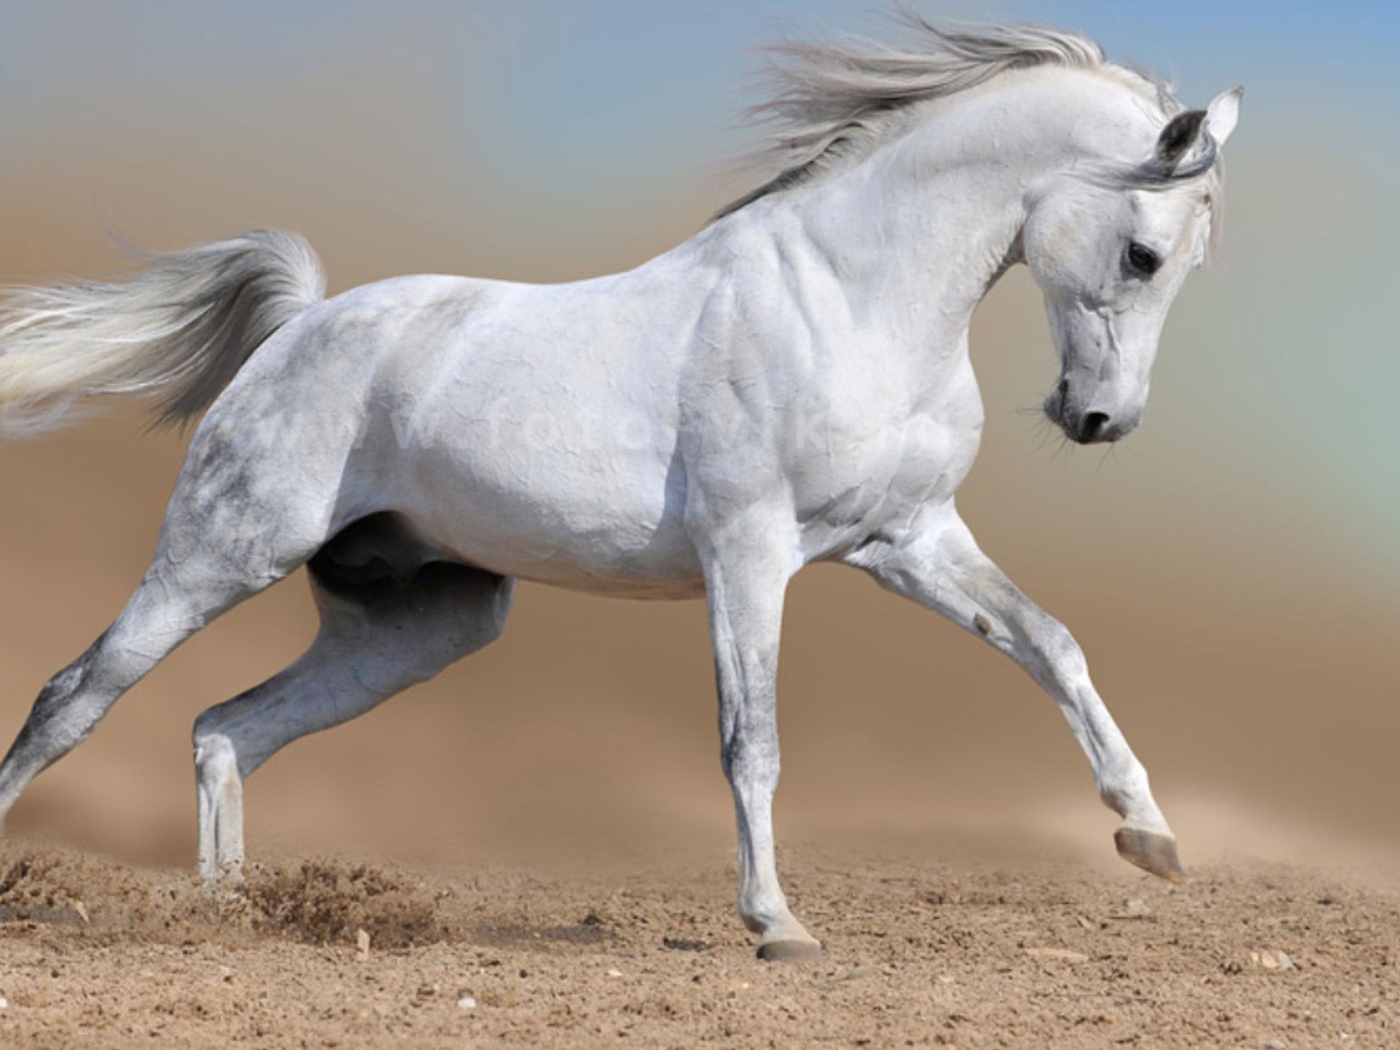 White horse runs